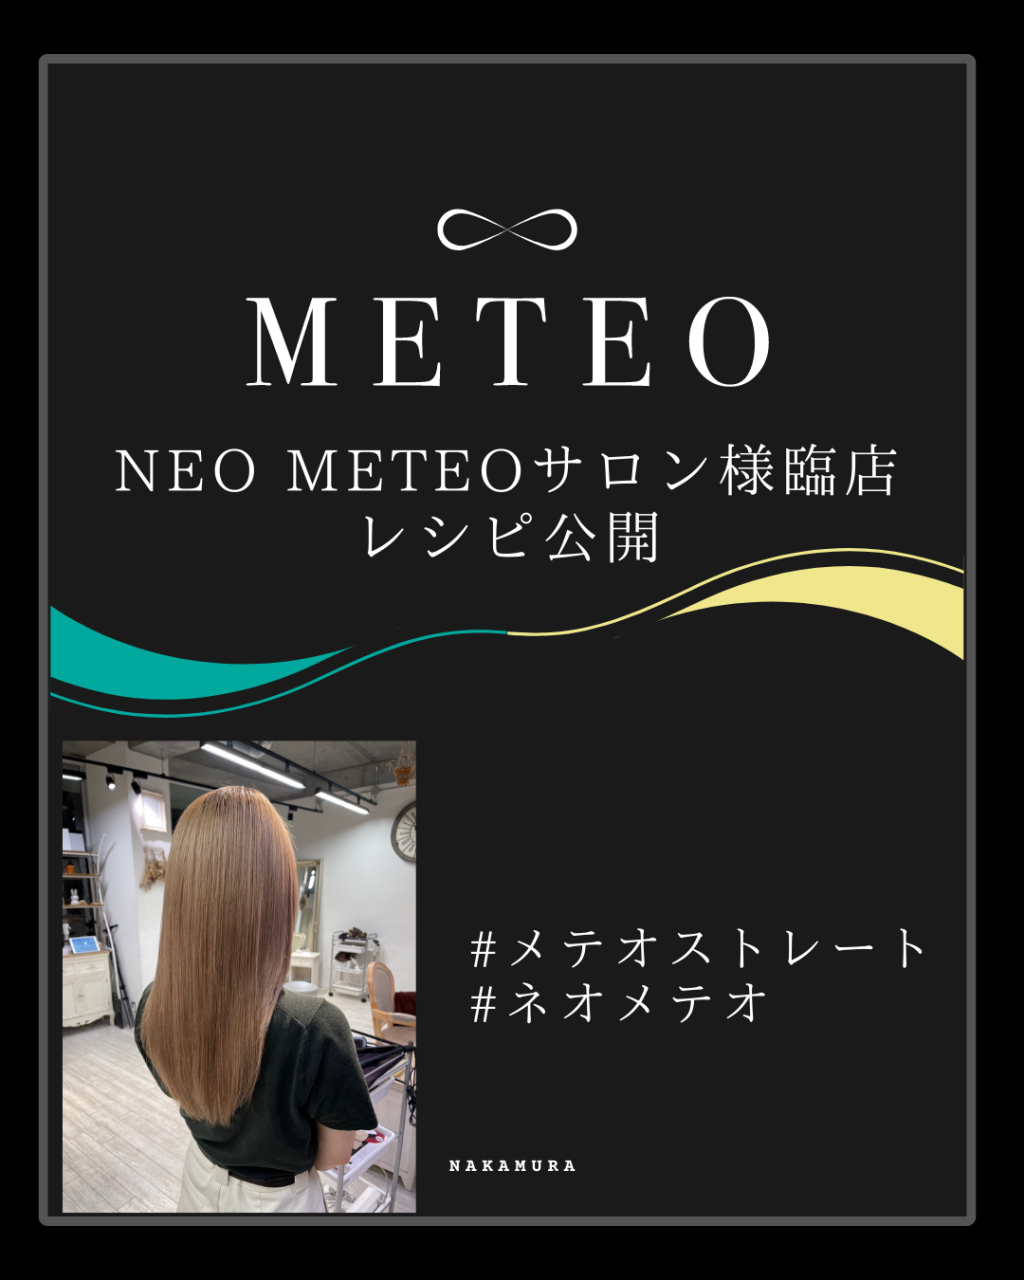 【METEO】NEO METEOサロン様臨店 レシピ公開